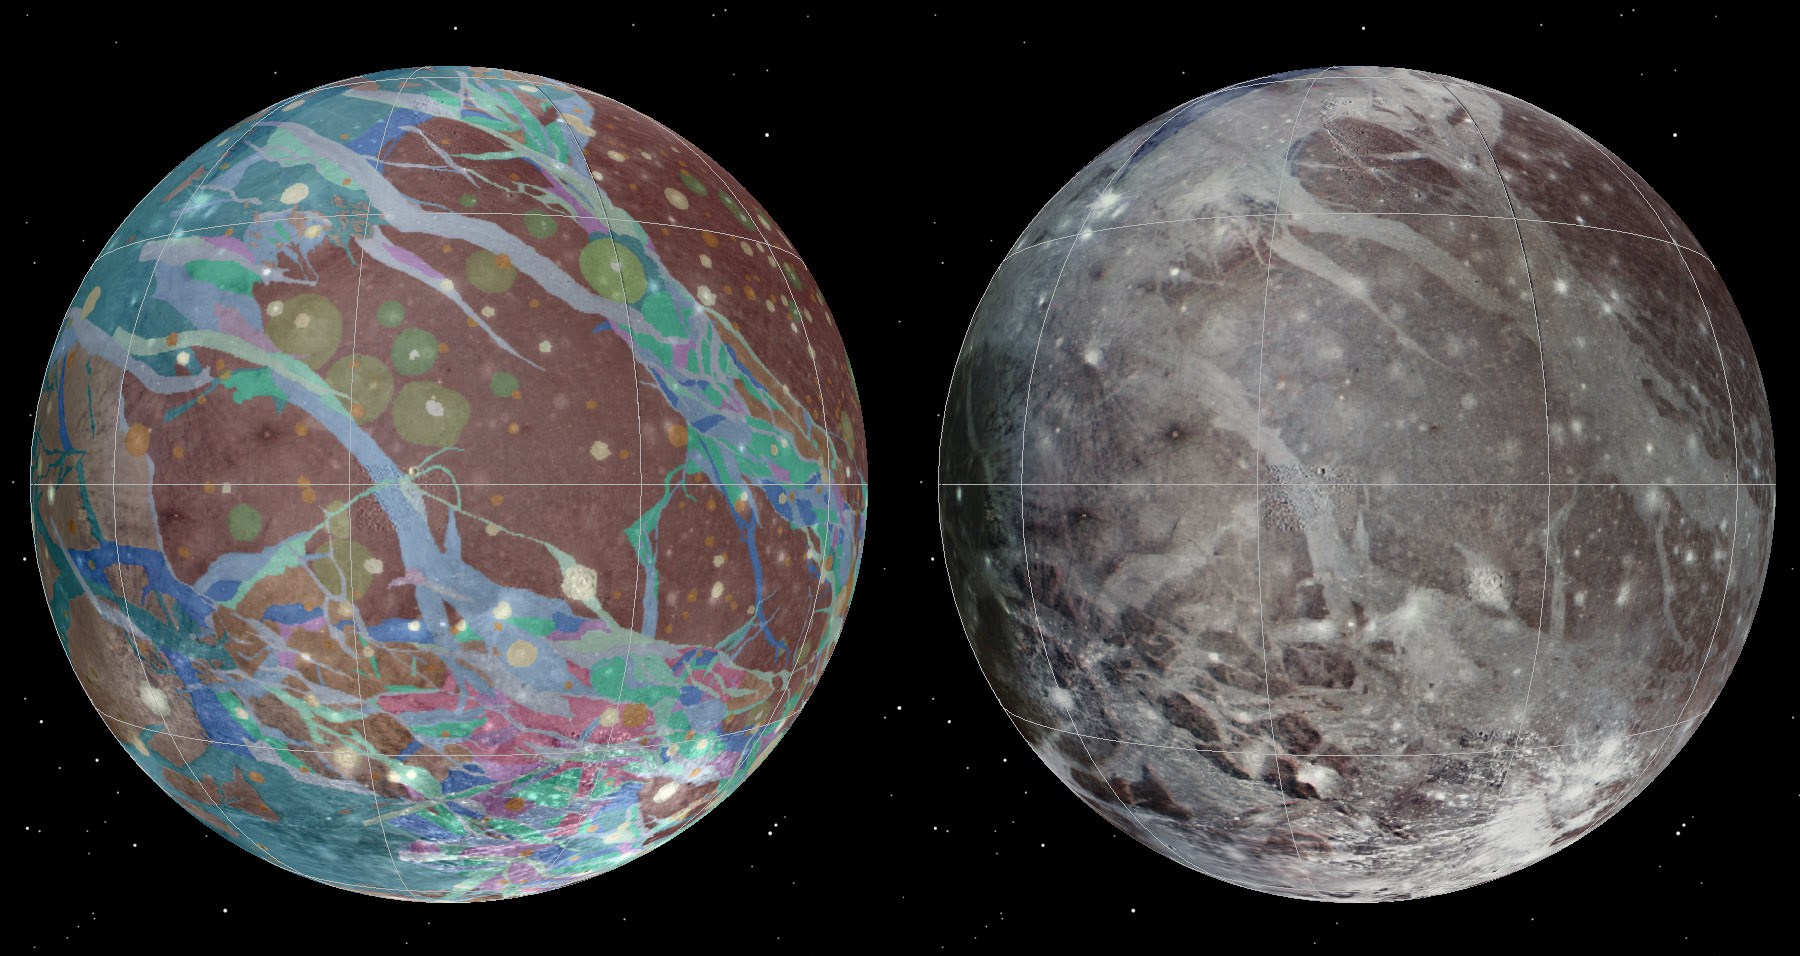 Plus gros satellite de Jupiter, la lune Ganymède est recouverte d'une surface glacée, formée et déformée par une variété de processus tectoniques, d'impacts et, peut-être, d'événements cryovolcaniques. L'histoire de Ganymède semble divisée en trois phases distinctes. À une époque précoce, il y a plus de 4 milliards d’années, dominée par des cratères d'impact, ont succédé une période marquée par de grands bouleversements tectoniques puis, finalement, une phase de repos caractérisée par une baisse progressive des flux de chaleur et de rares impacts. Les images et les données à l’origine de la première carte géologique de cette lune ont été recueillies au cours des survols de Voyager 1 et Voyager 2 (1979), ainsi que lors de la mission Galileo en orbite autour de Jupiter (1995-2003). © Nasa,USGS